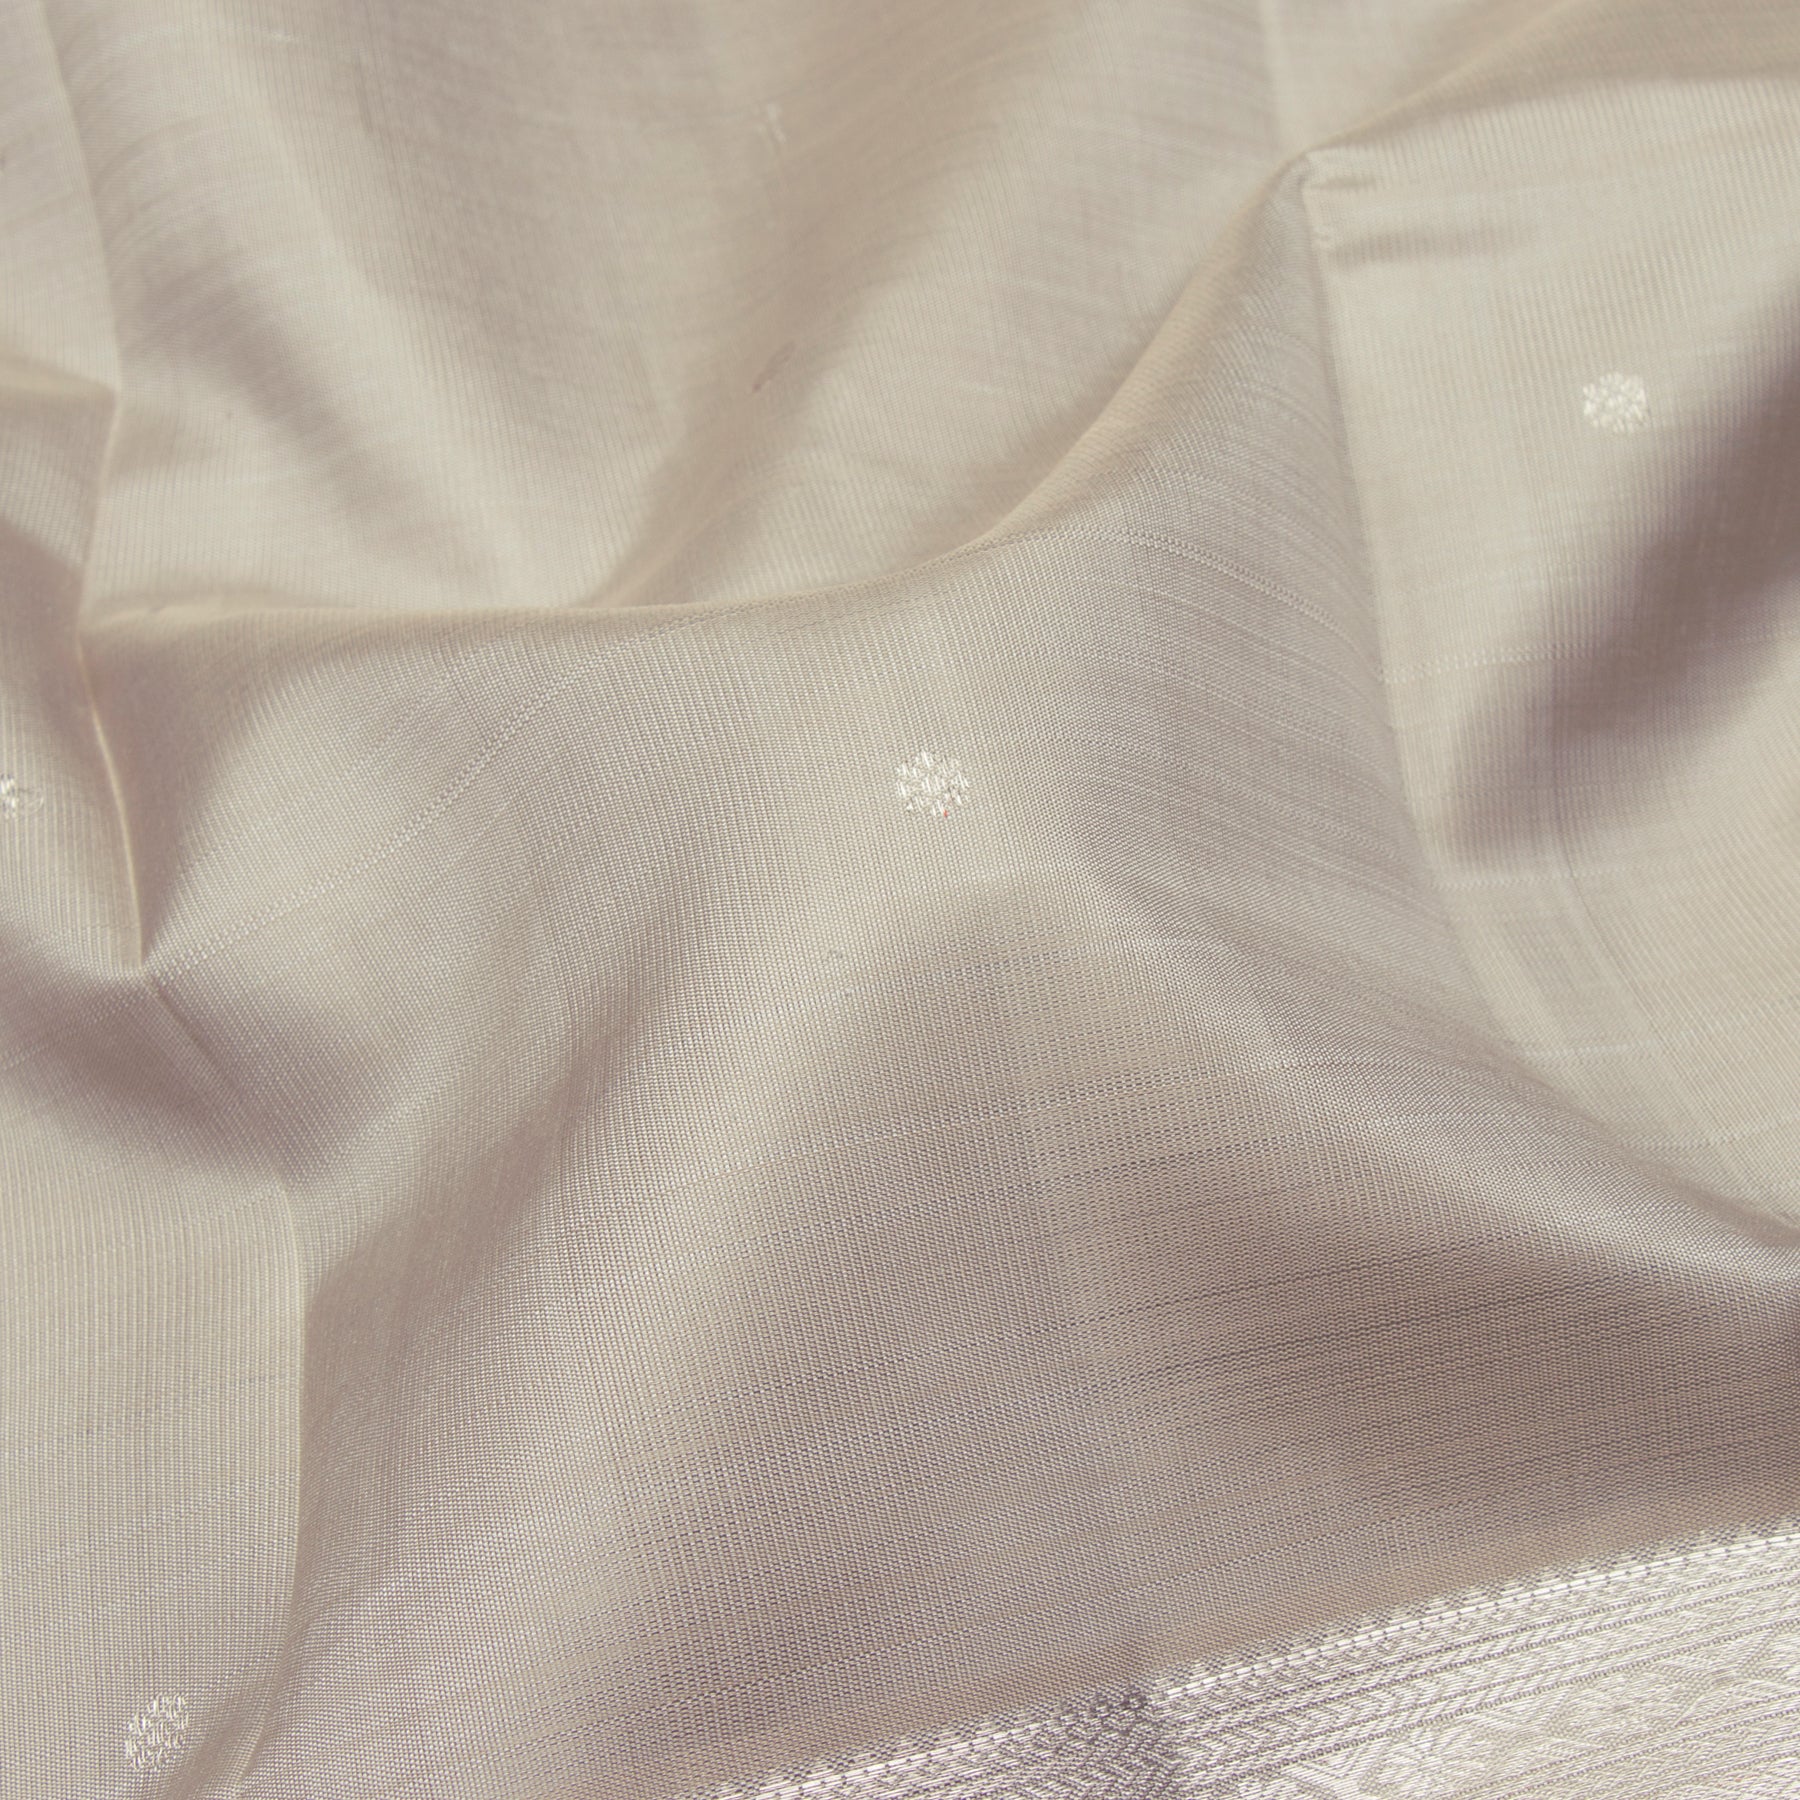 Kanakavalli Kanjivaram Silk Sari 23-611-HS001-11749 - Fabric View